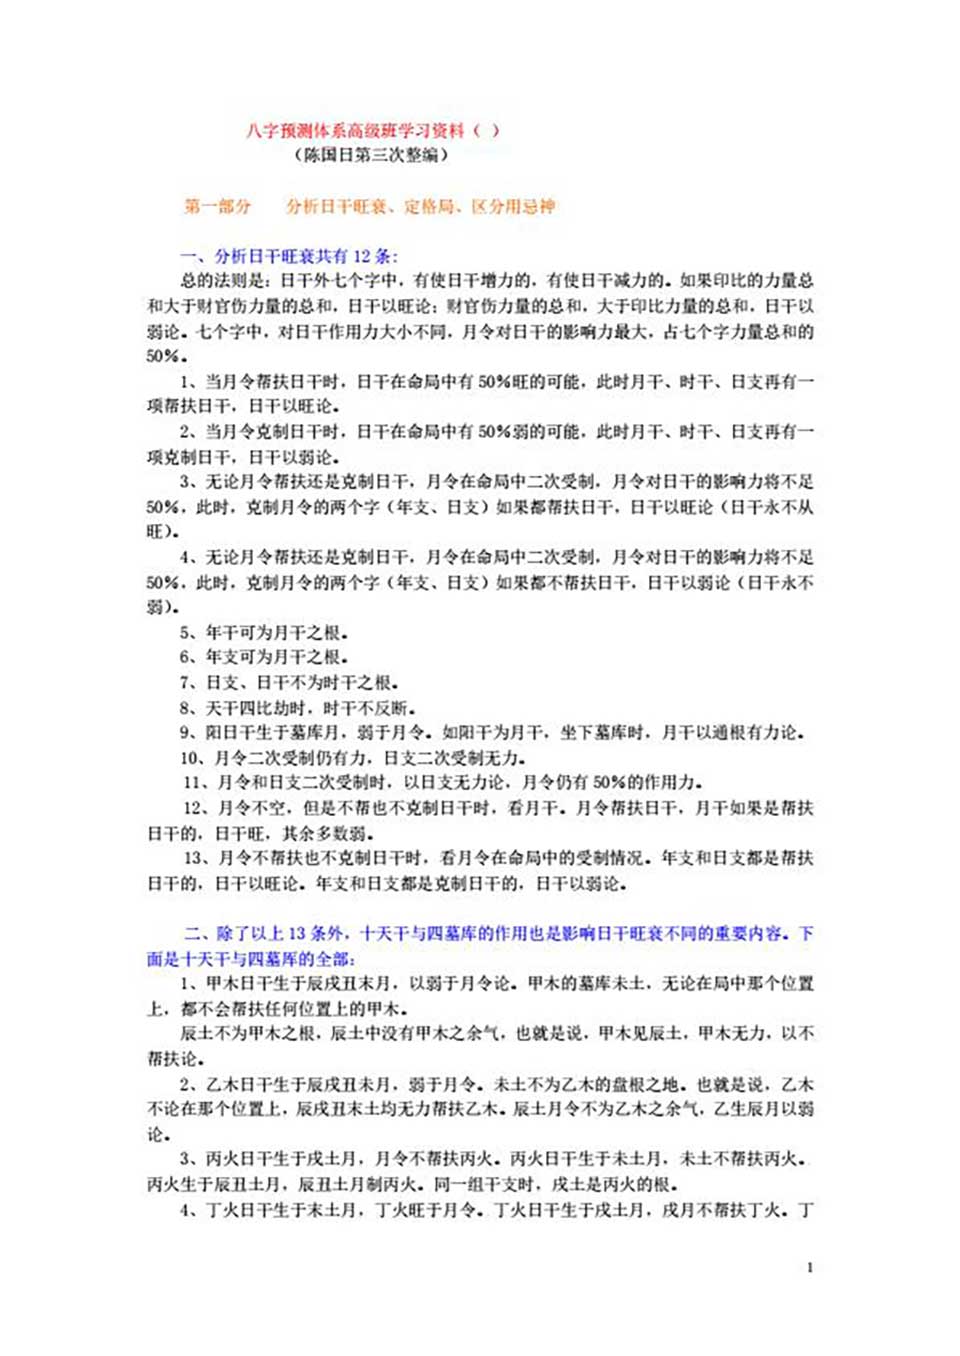 陈国日-新派的八字预测体系高级班学习资料92页 .pdf